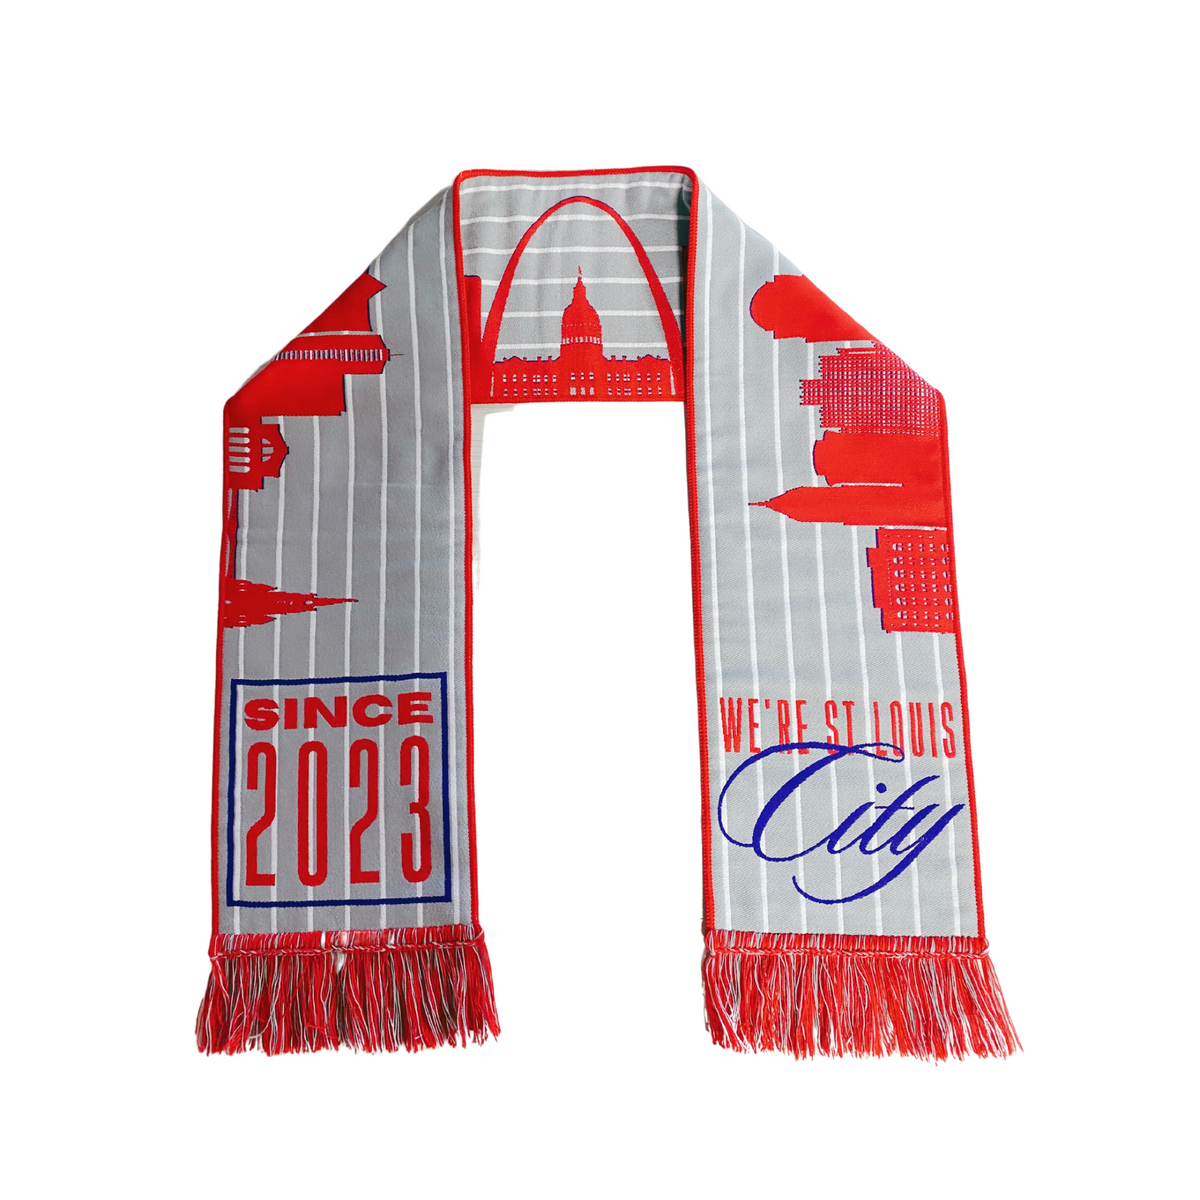 St. Louis City SC scarf